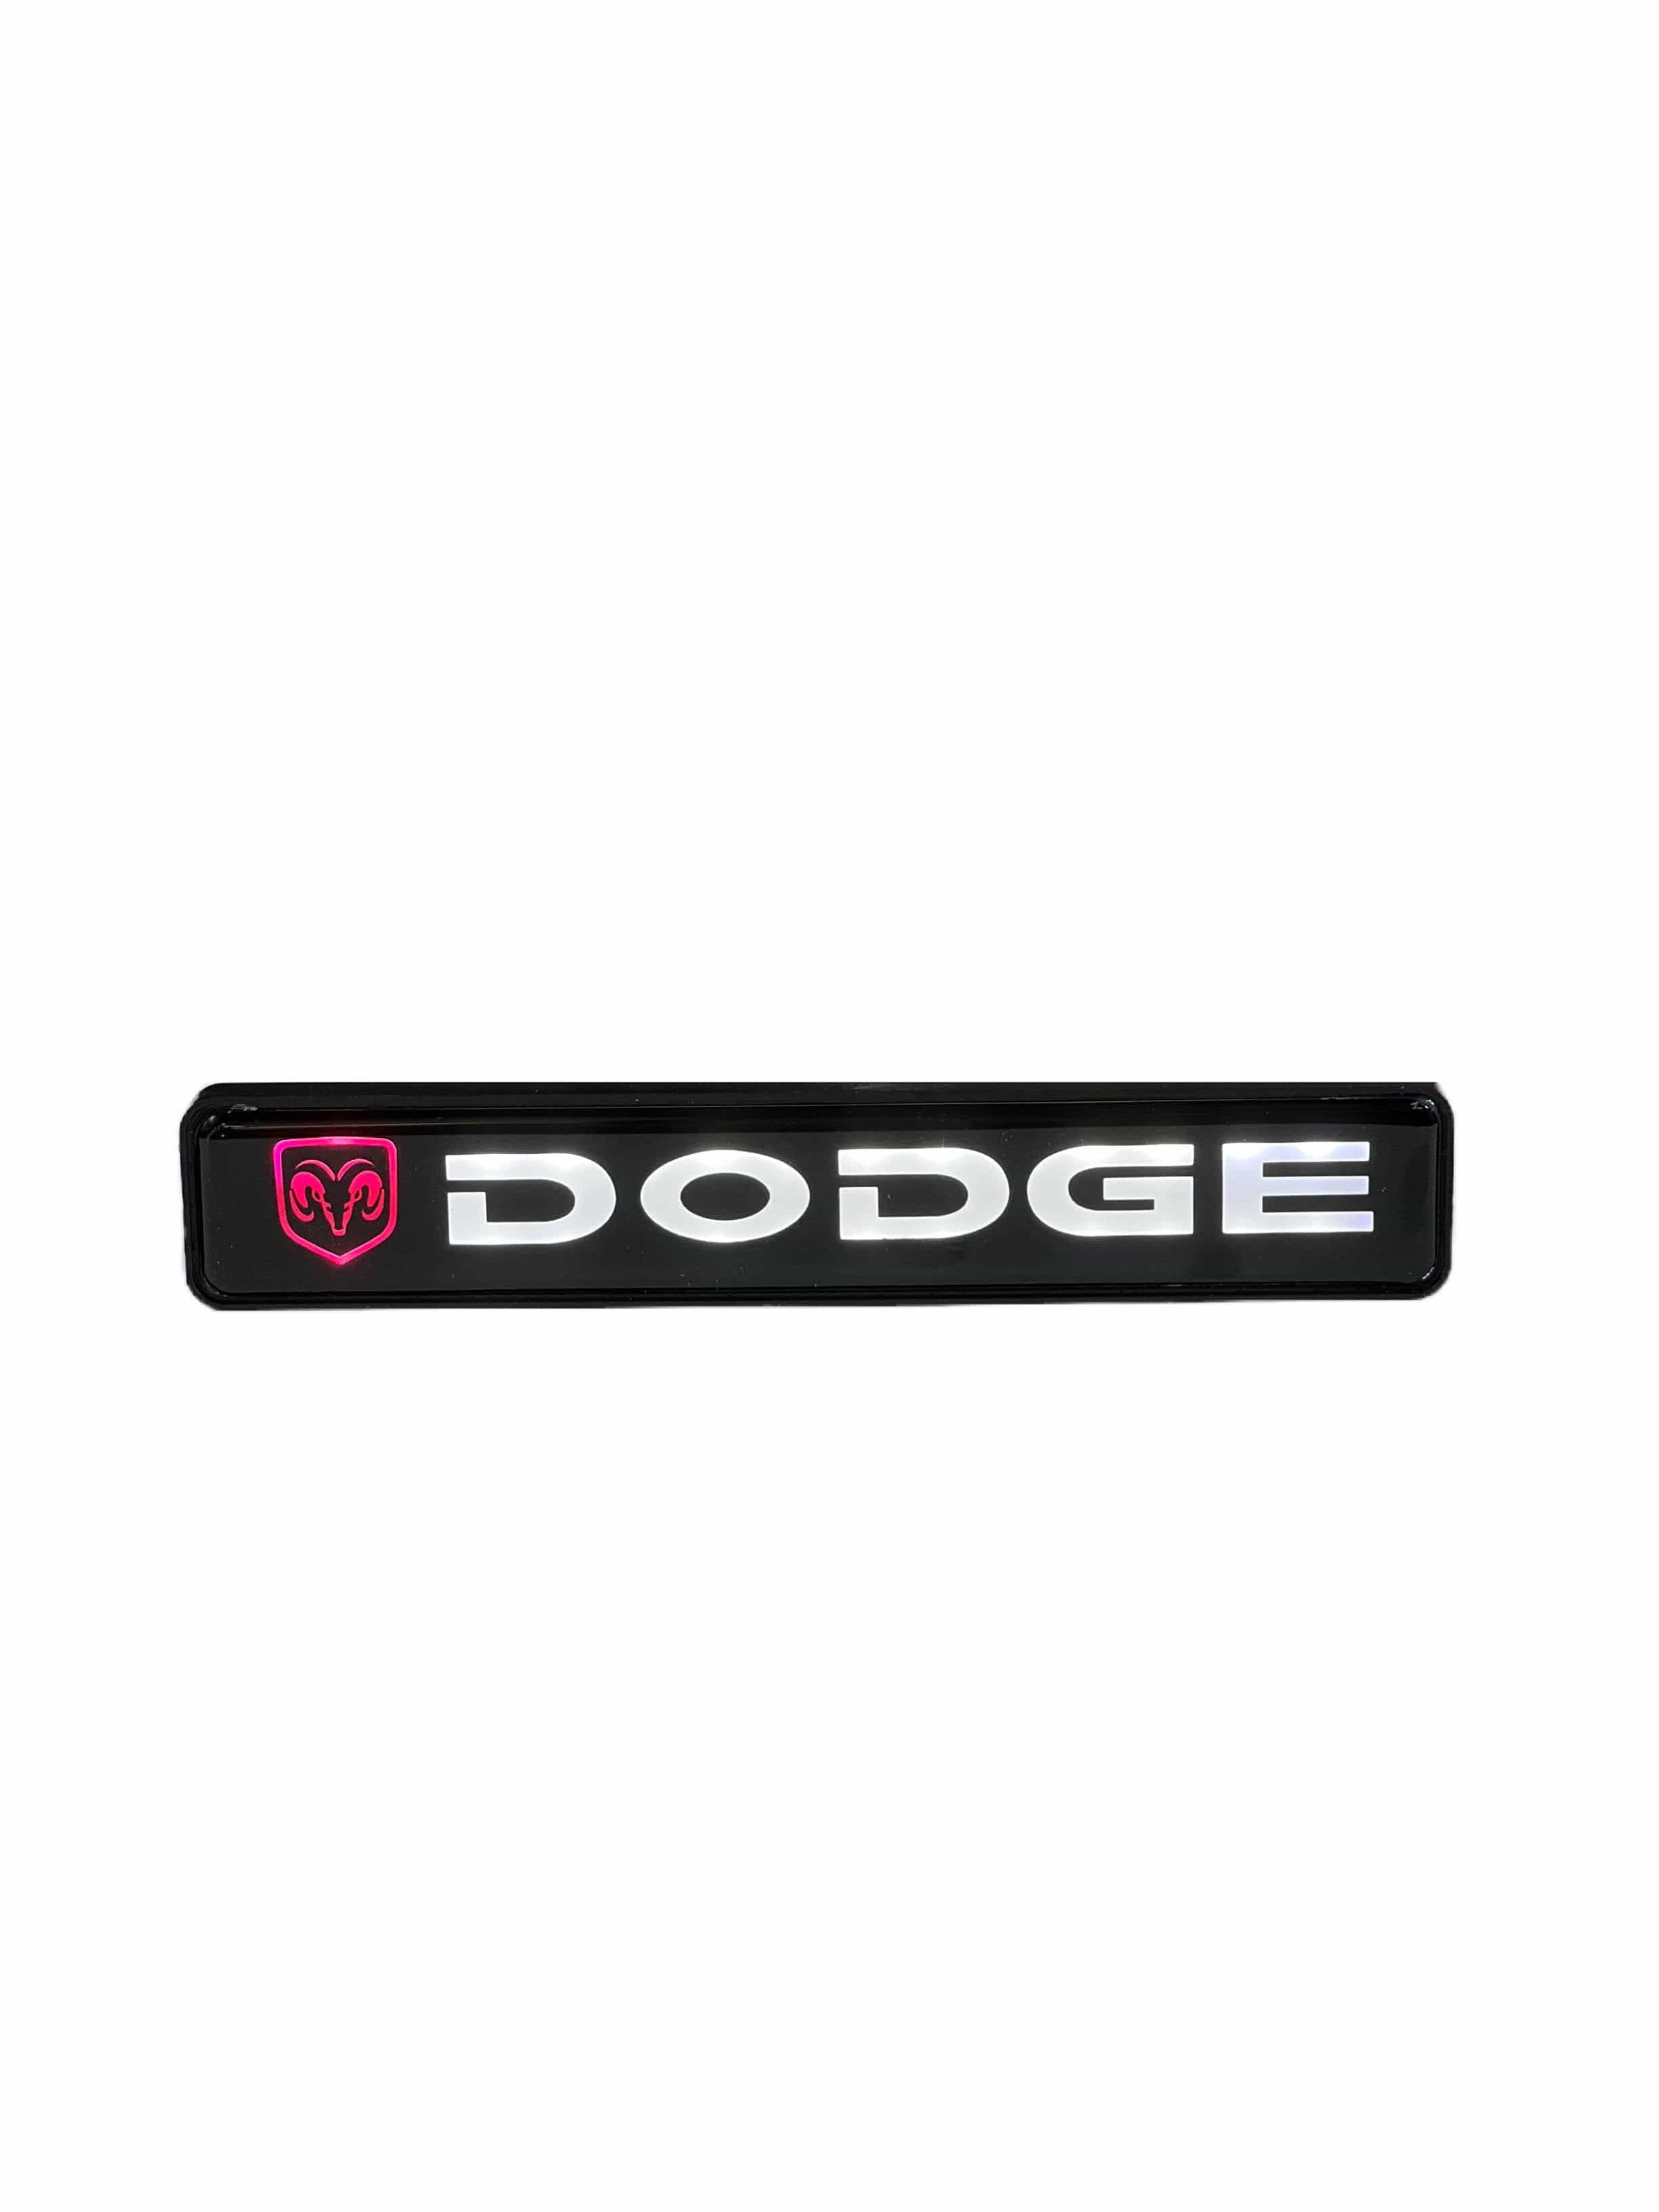 Branded LED Grille Badge: Backlit Logo For Many Makes and Models